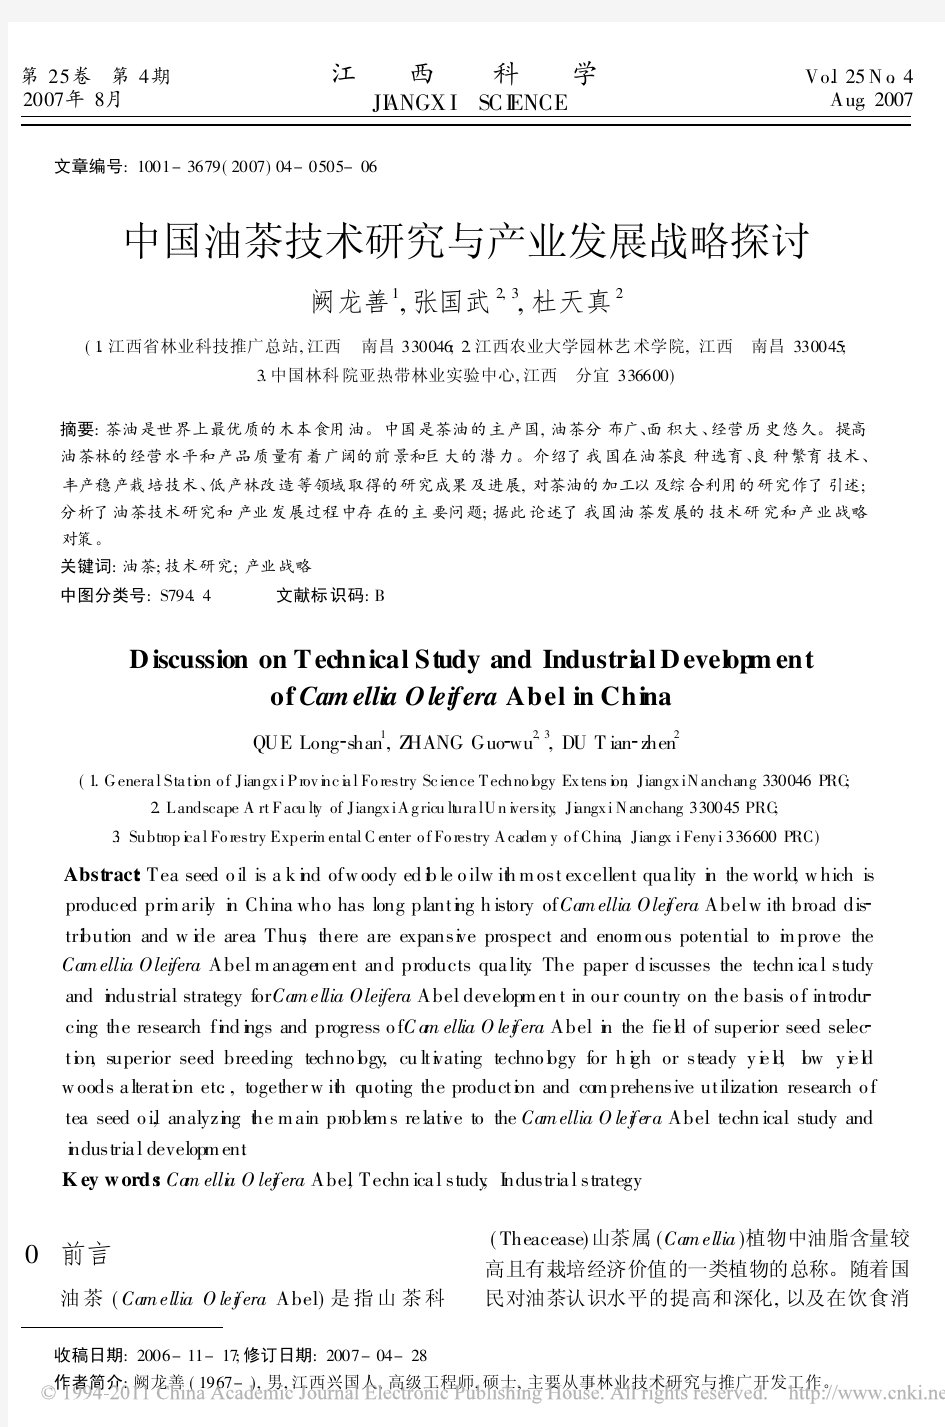 中国油茶技术研究与产业发展战略探讨